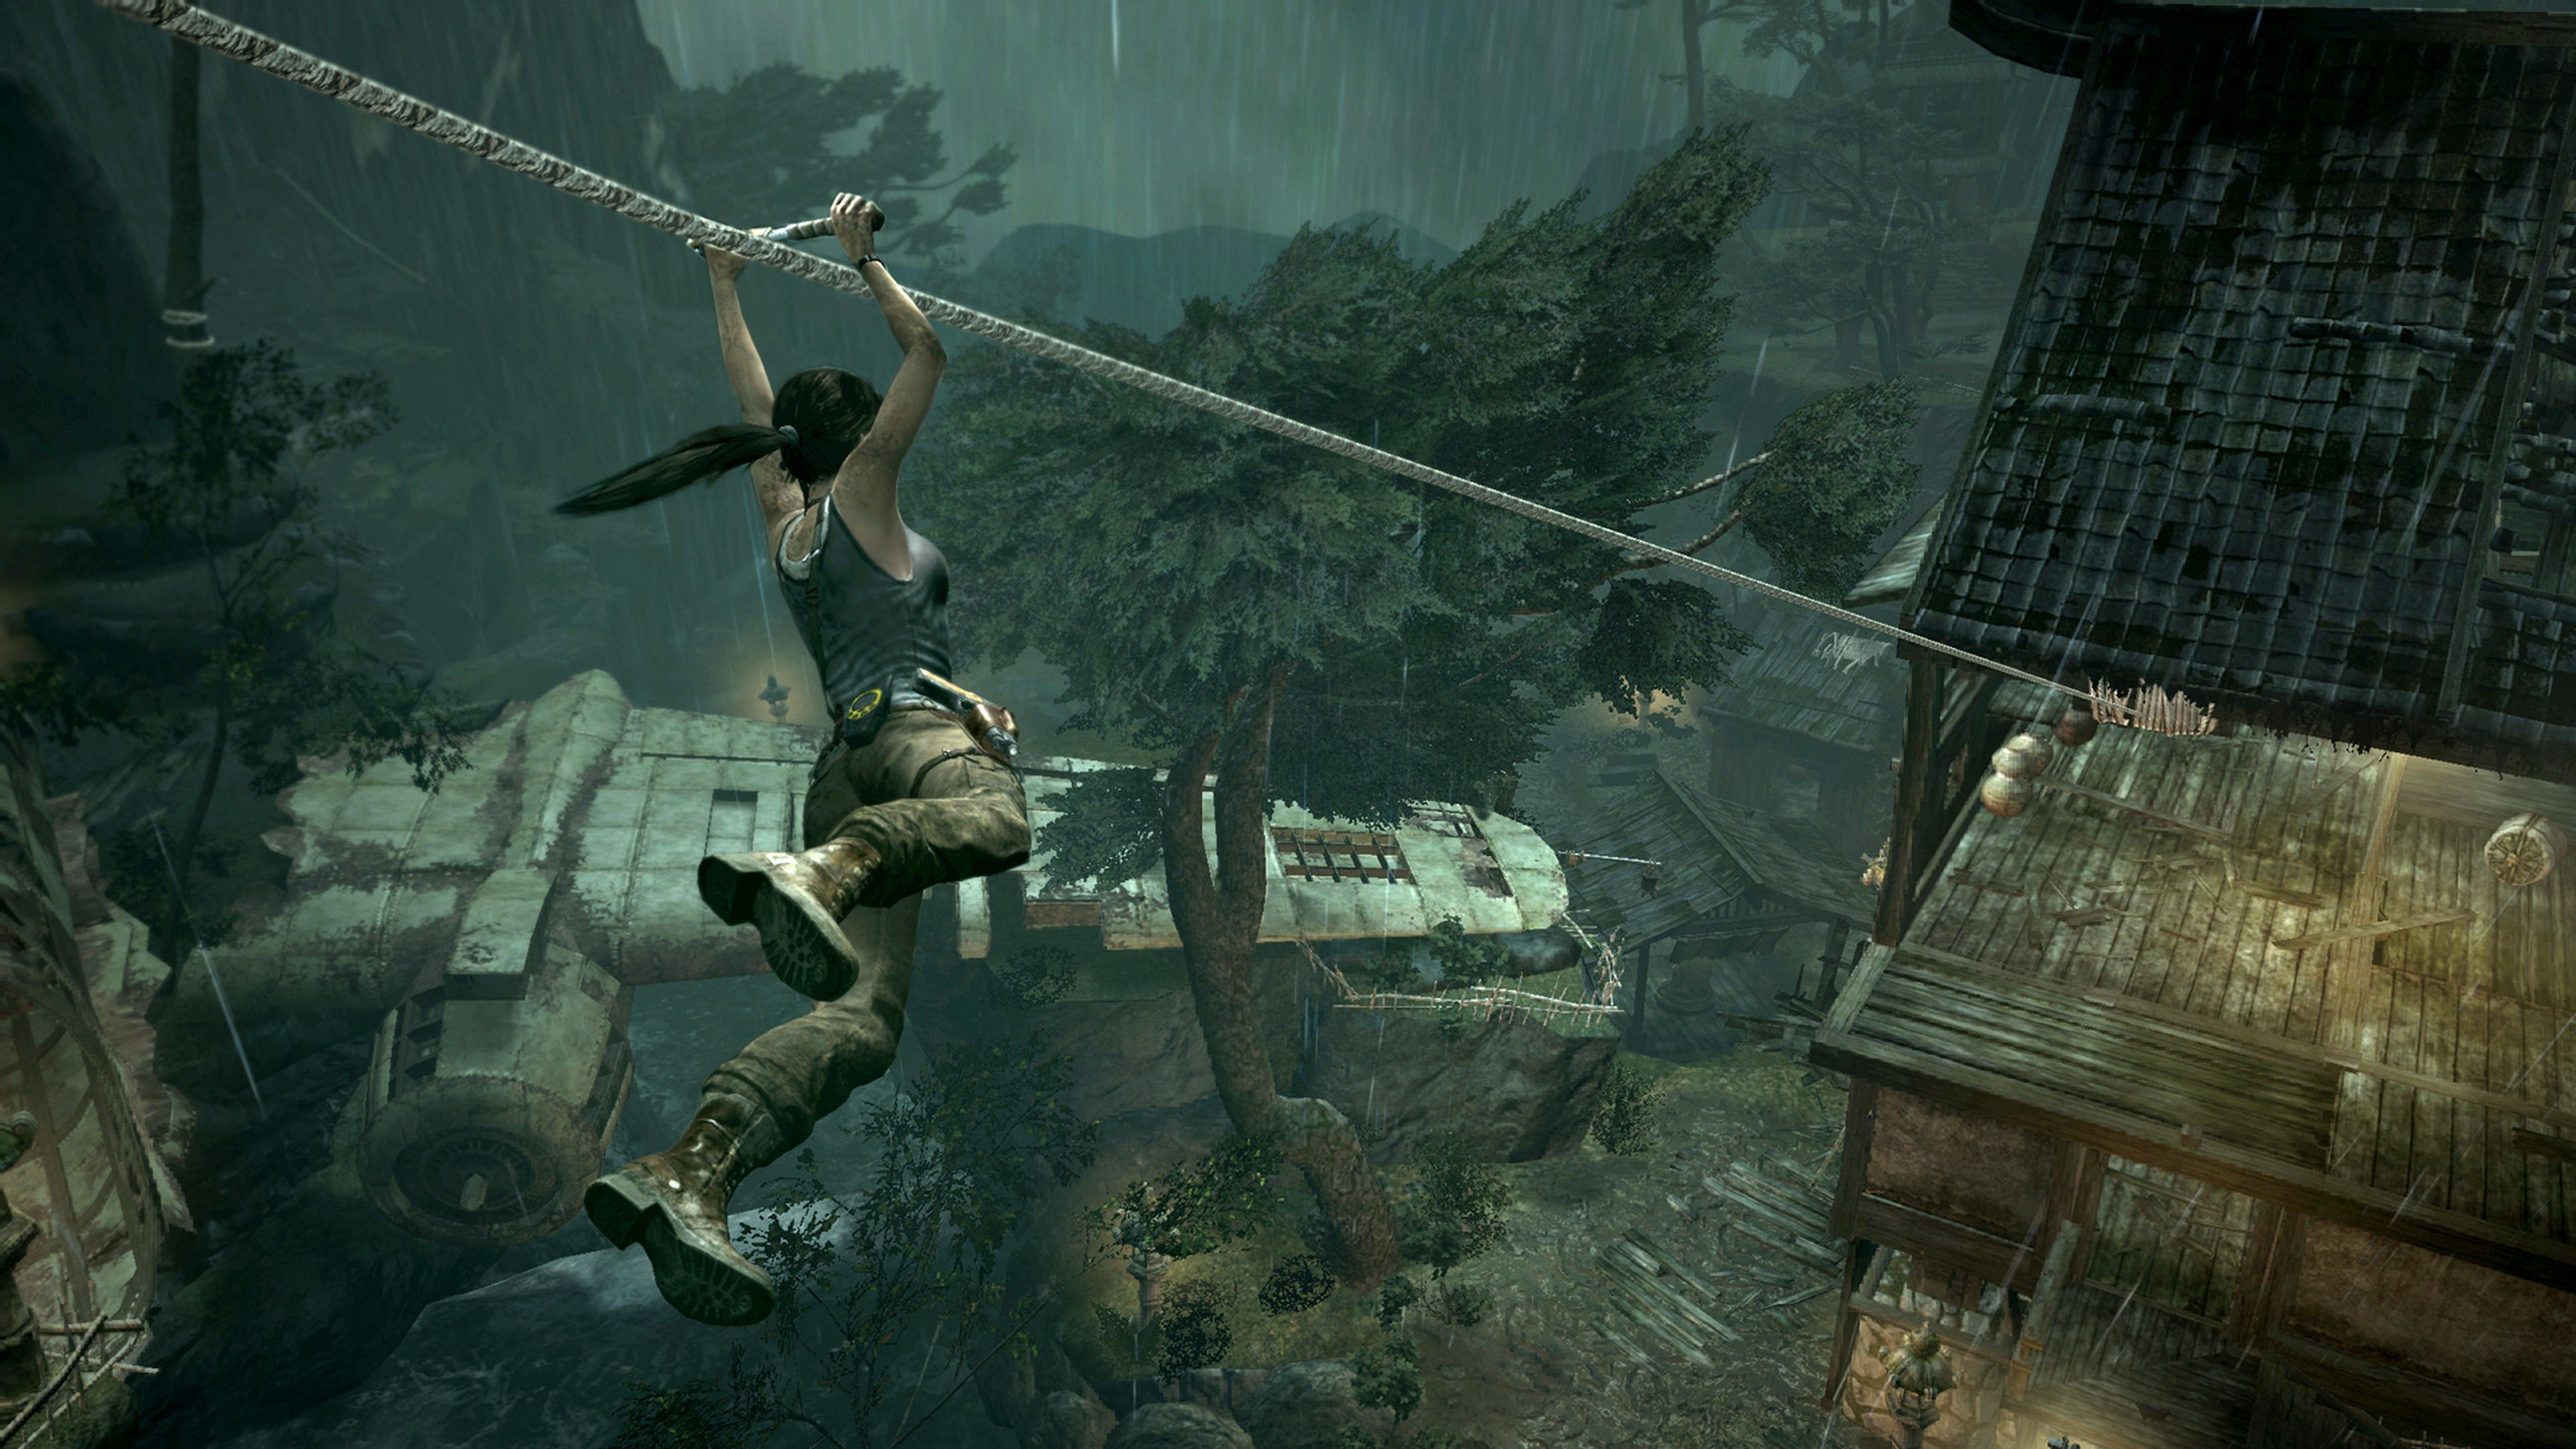 Avance de Tomb Raider para PS3 y 360